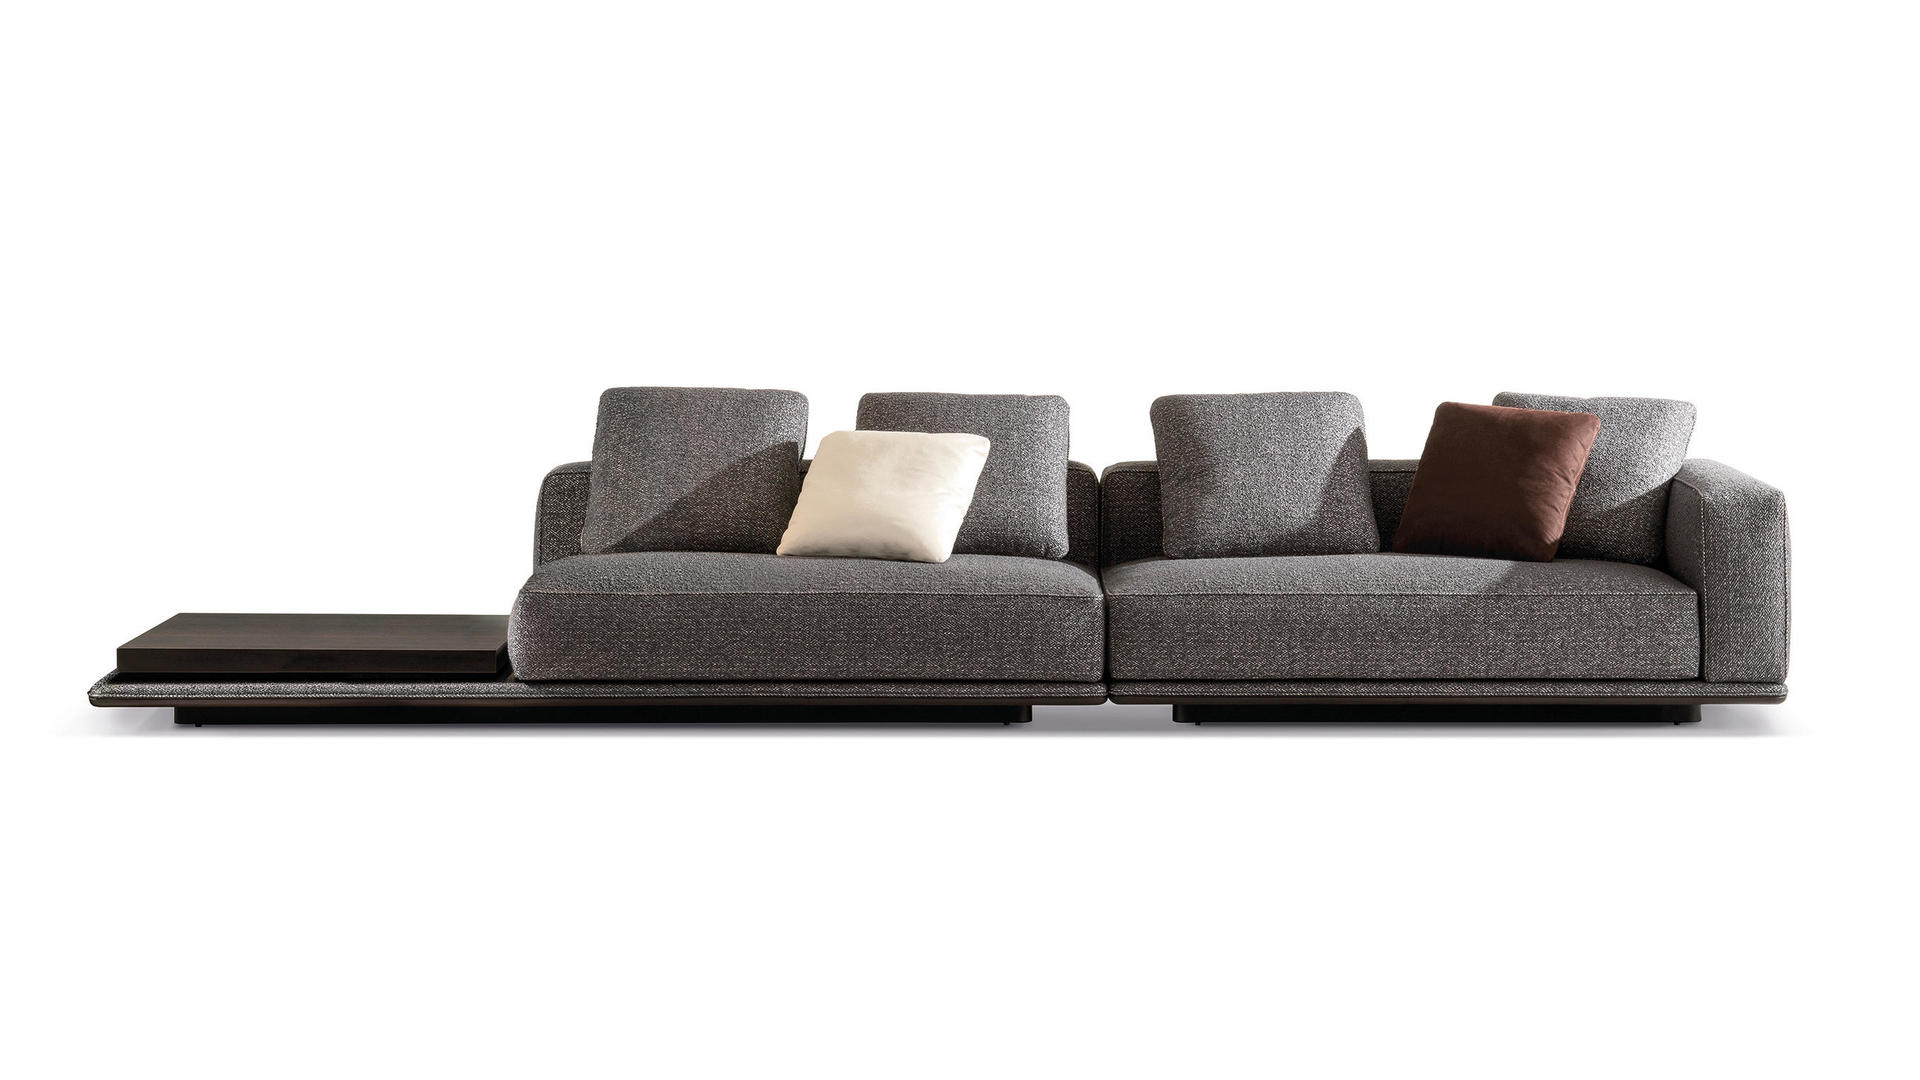 HORA Barneveld Minotti Horizonte bank modulaire sofa design meubelen designmeubelen 10.jpg